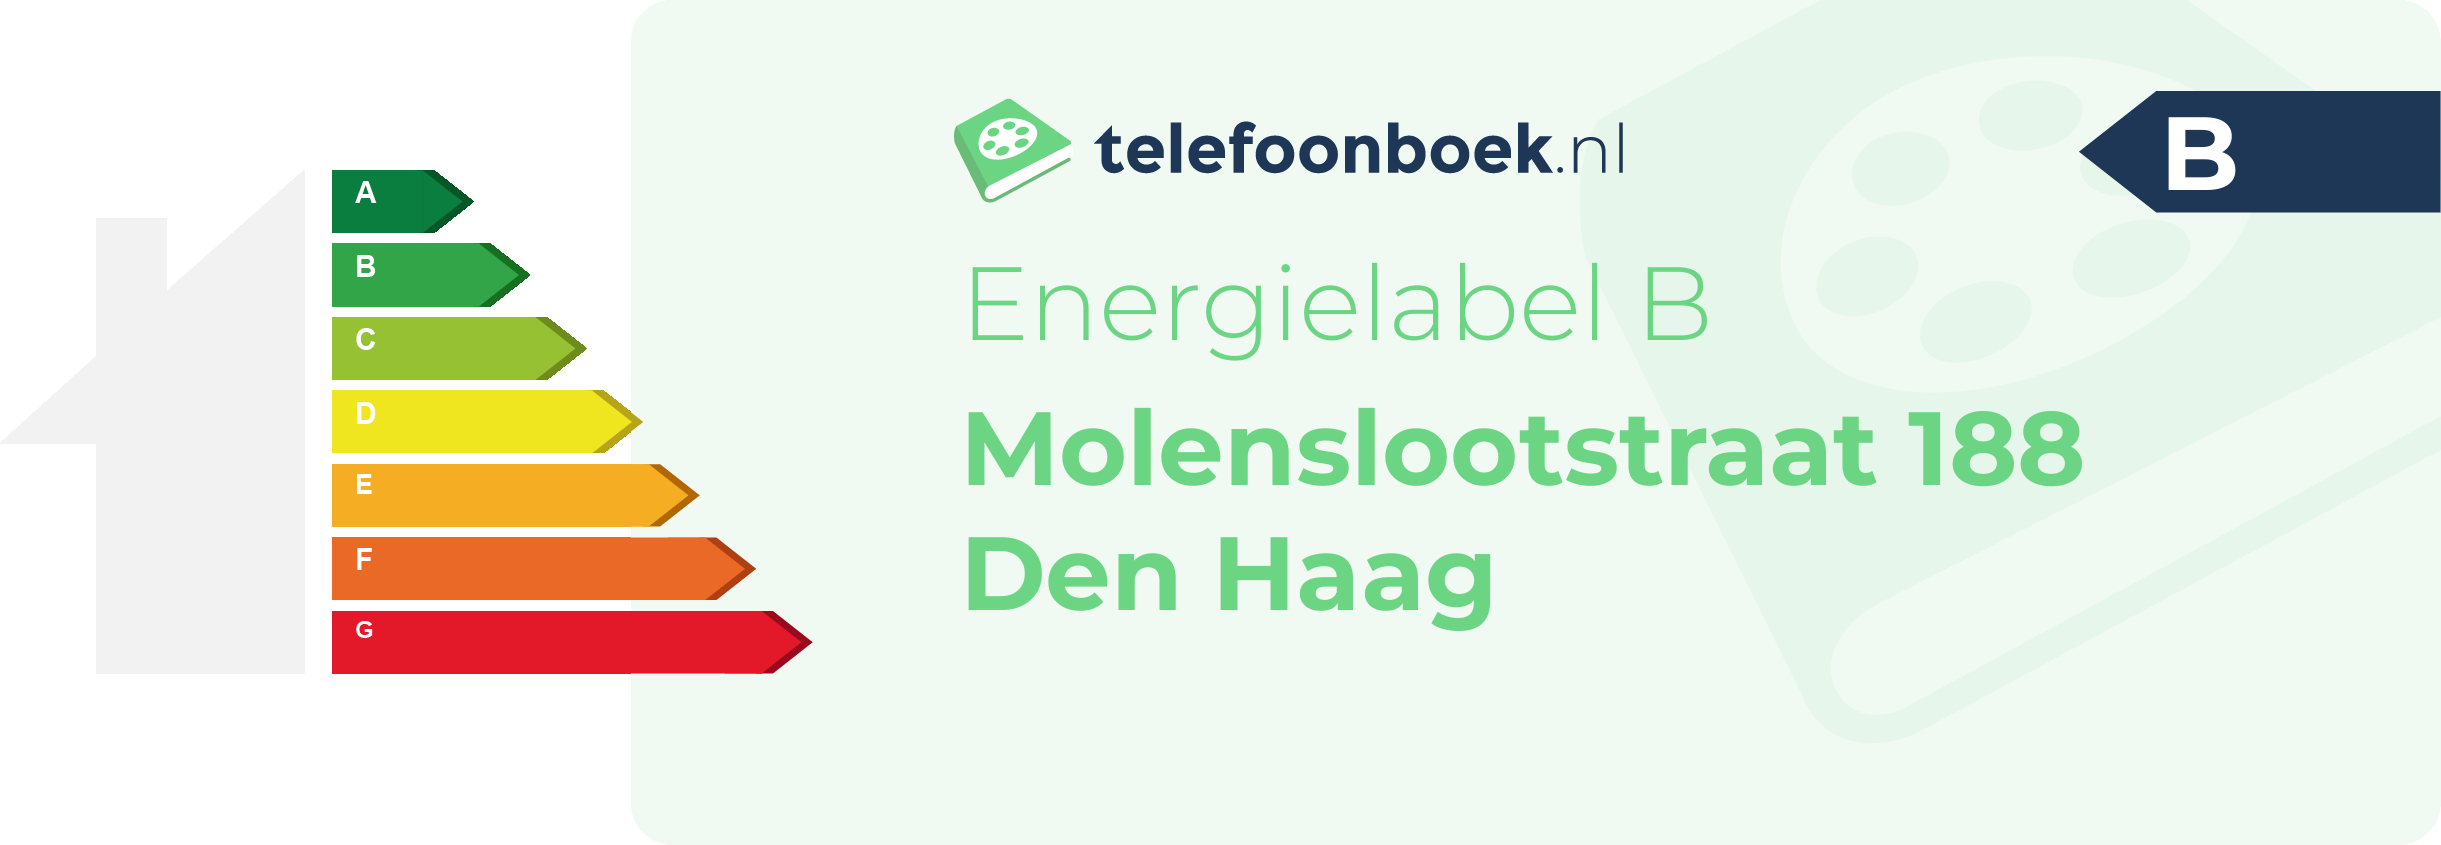 Energielabel Molenslootstraat 188 Den Haag